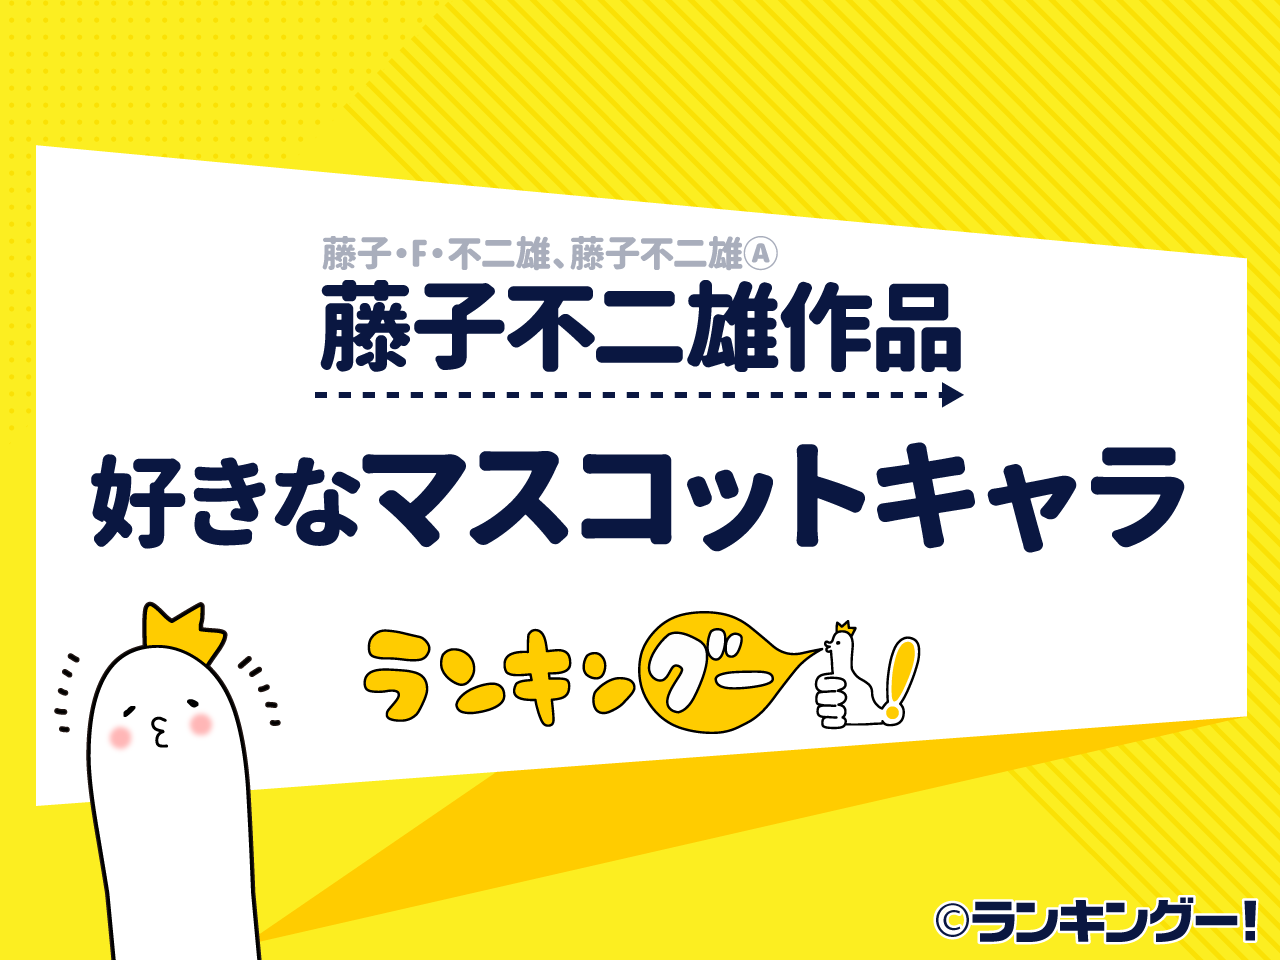 可愛いﾅﾘ 藤子不二雄漫画の好きなマスコットキャラクターランキング 4 5位 ランキングー